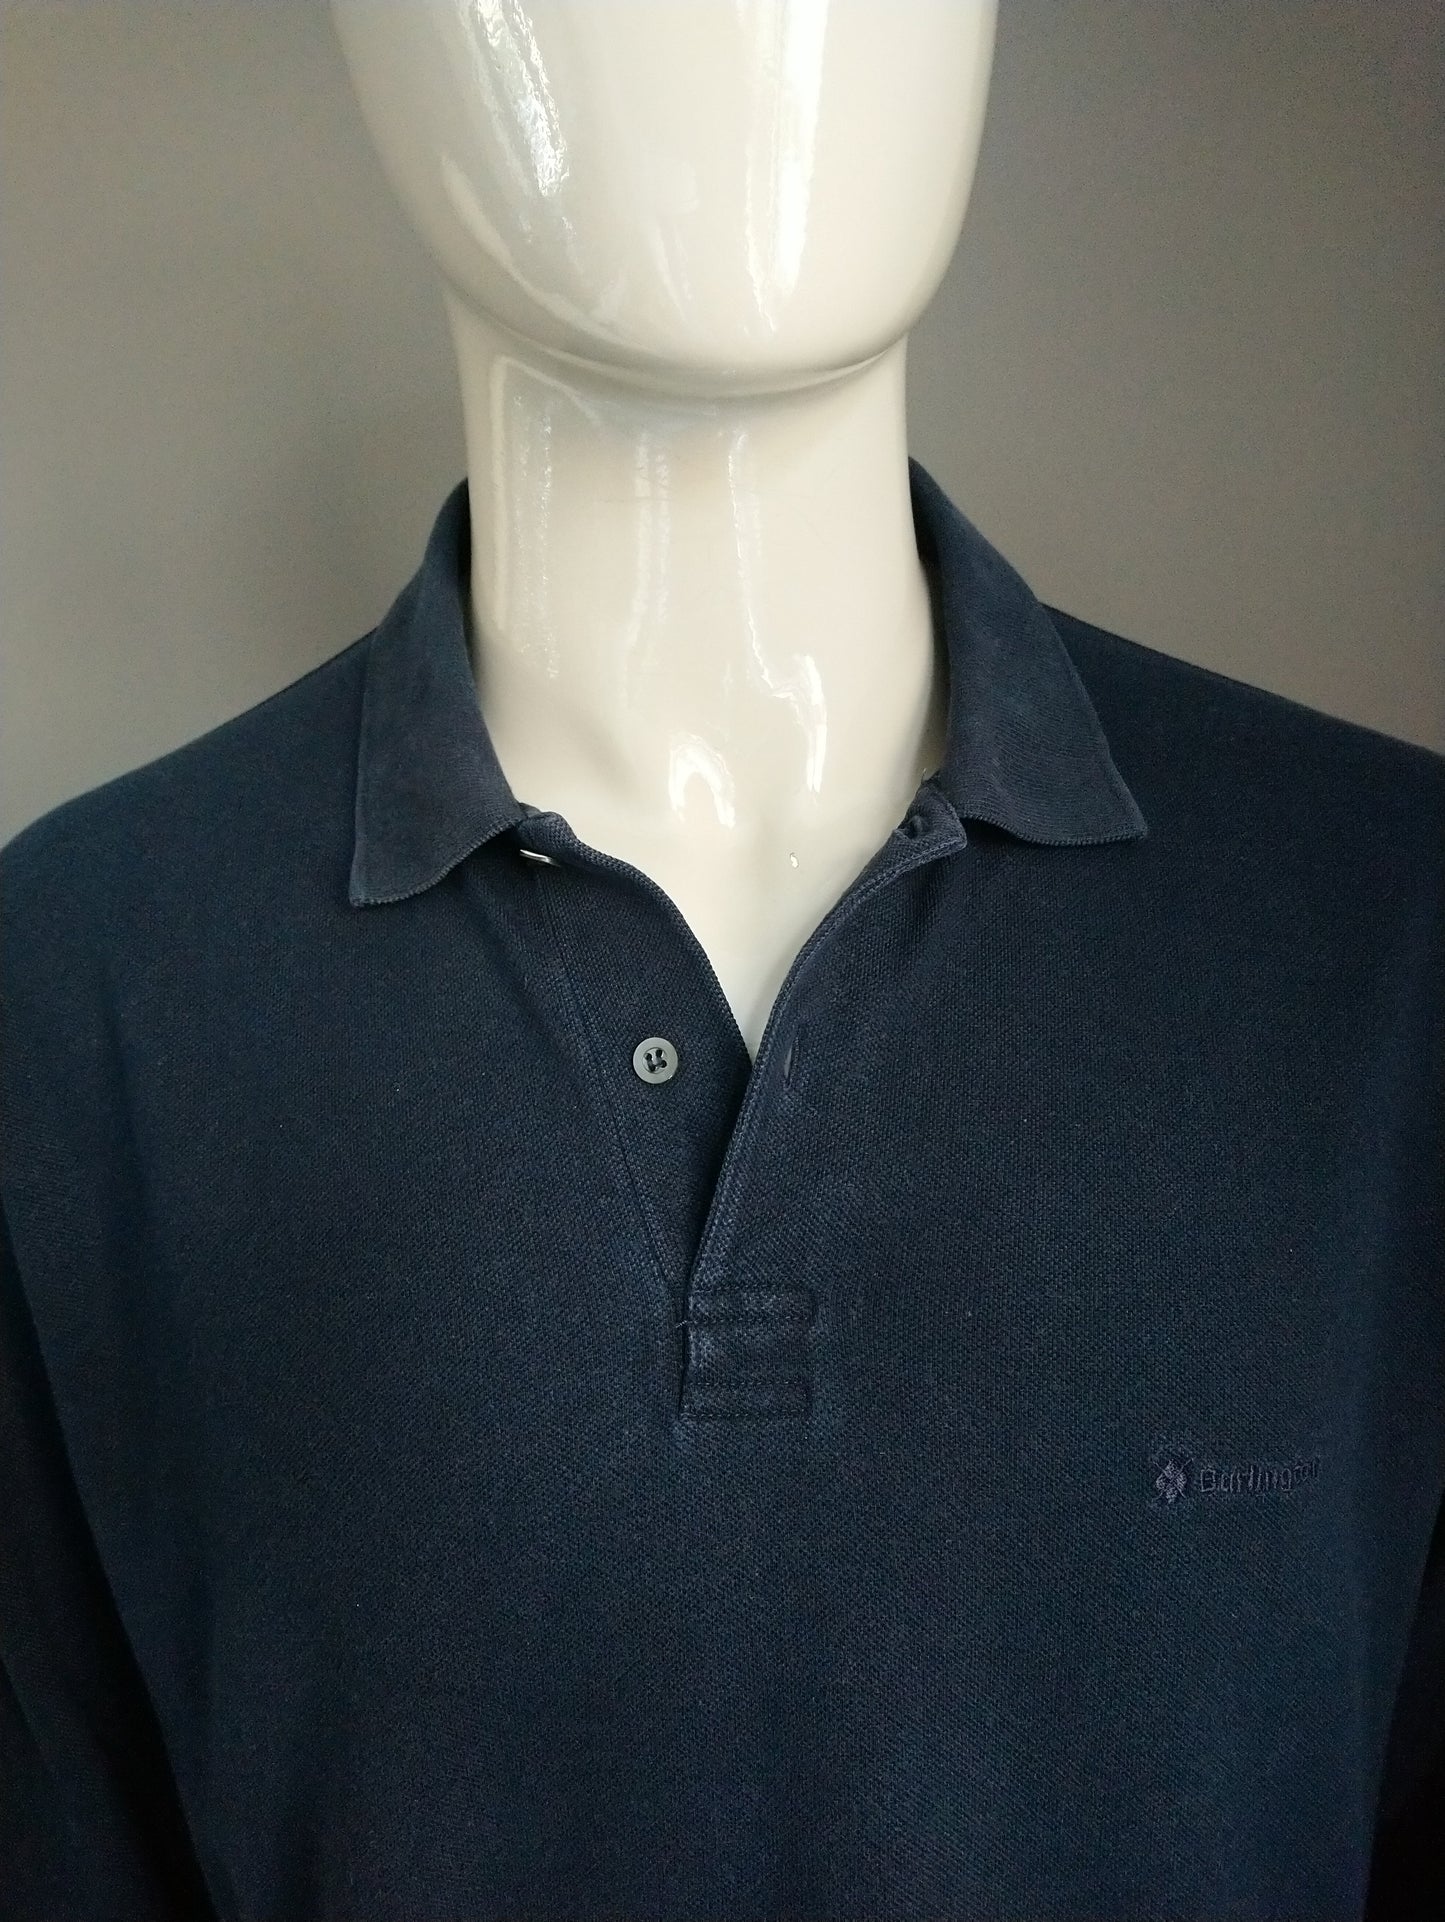 Burlington Polo Sweater. Colorato blu scuro. Taglia XL. Cotone.